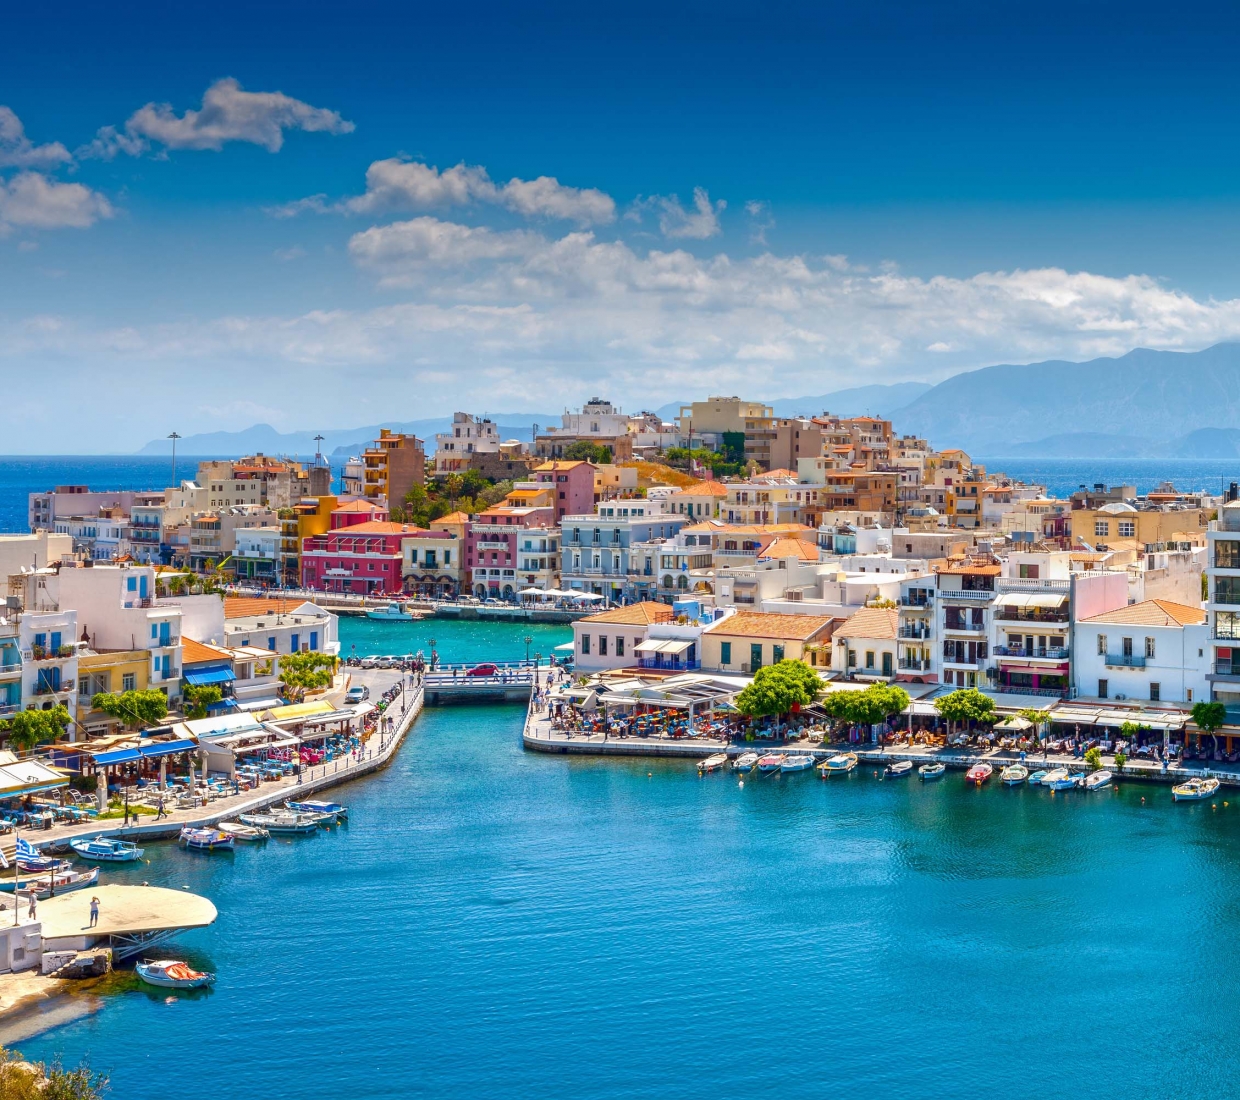 Seleção dos melhores e mais bonitos hotéis e casas de férias em Crete